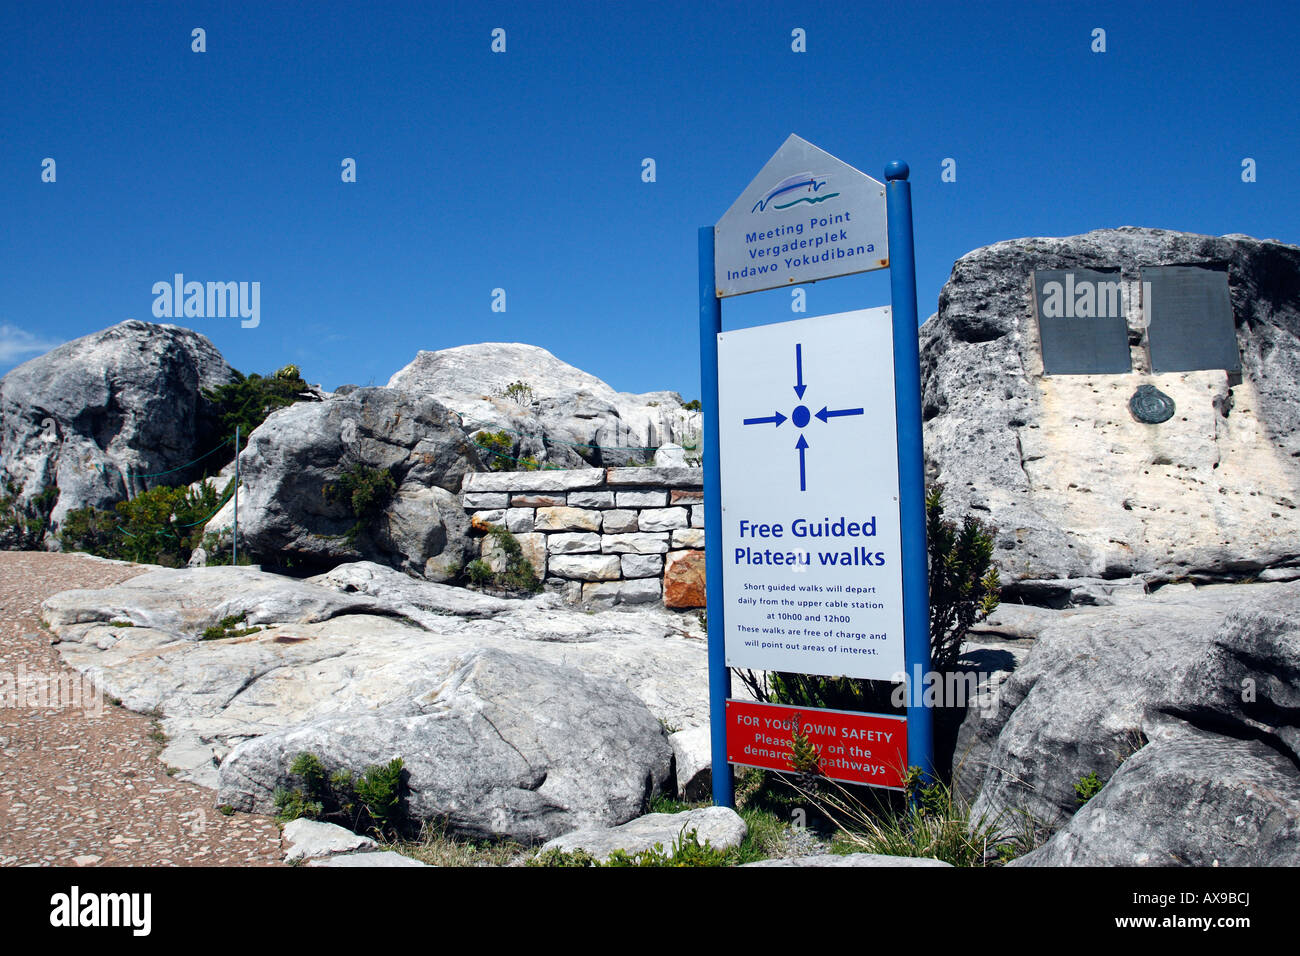 Il punto di incontro per libera guidata passeggiate altopiano di table mountain national park cape town Western Cape Province sud africa Foto Stock